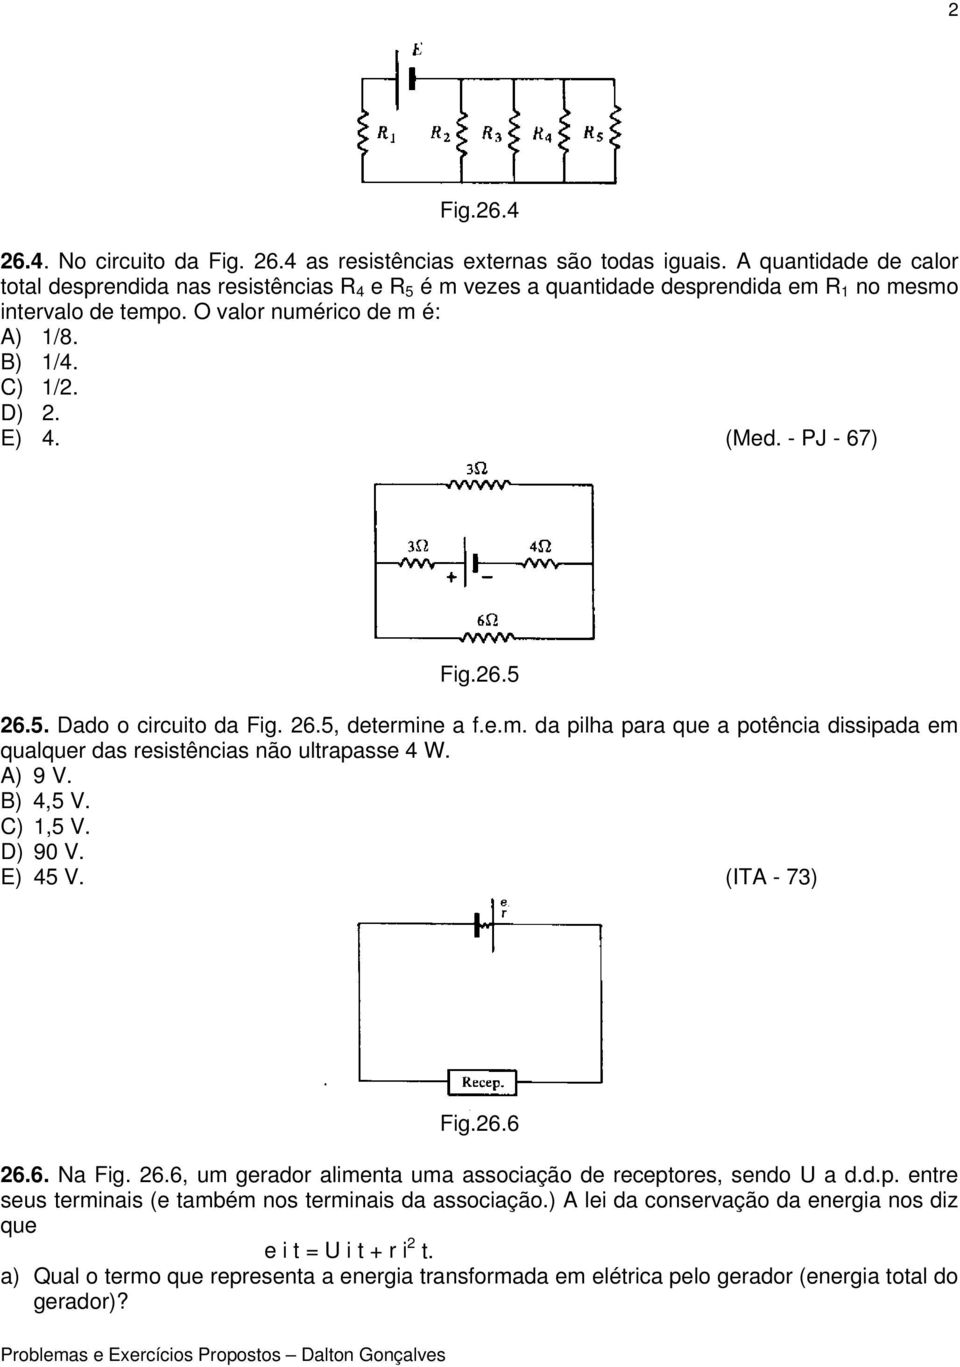 (Med. - PJ - 67) Fig.26.5 26.5. Dado o circuito da Fig. 26.5, determine a f.e.m. da pilha para que a potência dissipada em qualquer das resistências não ultrapasse 4 W. A) 9 V. B) 4,5 V. C) 1,5 V.